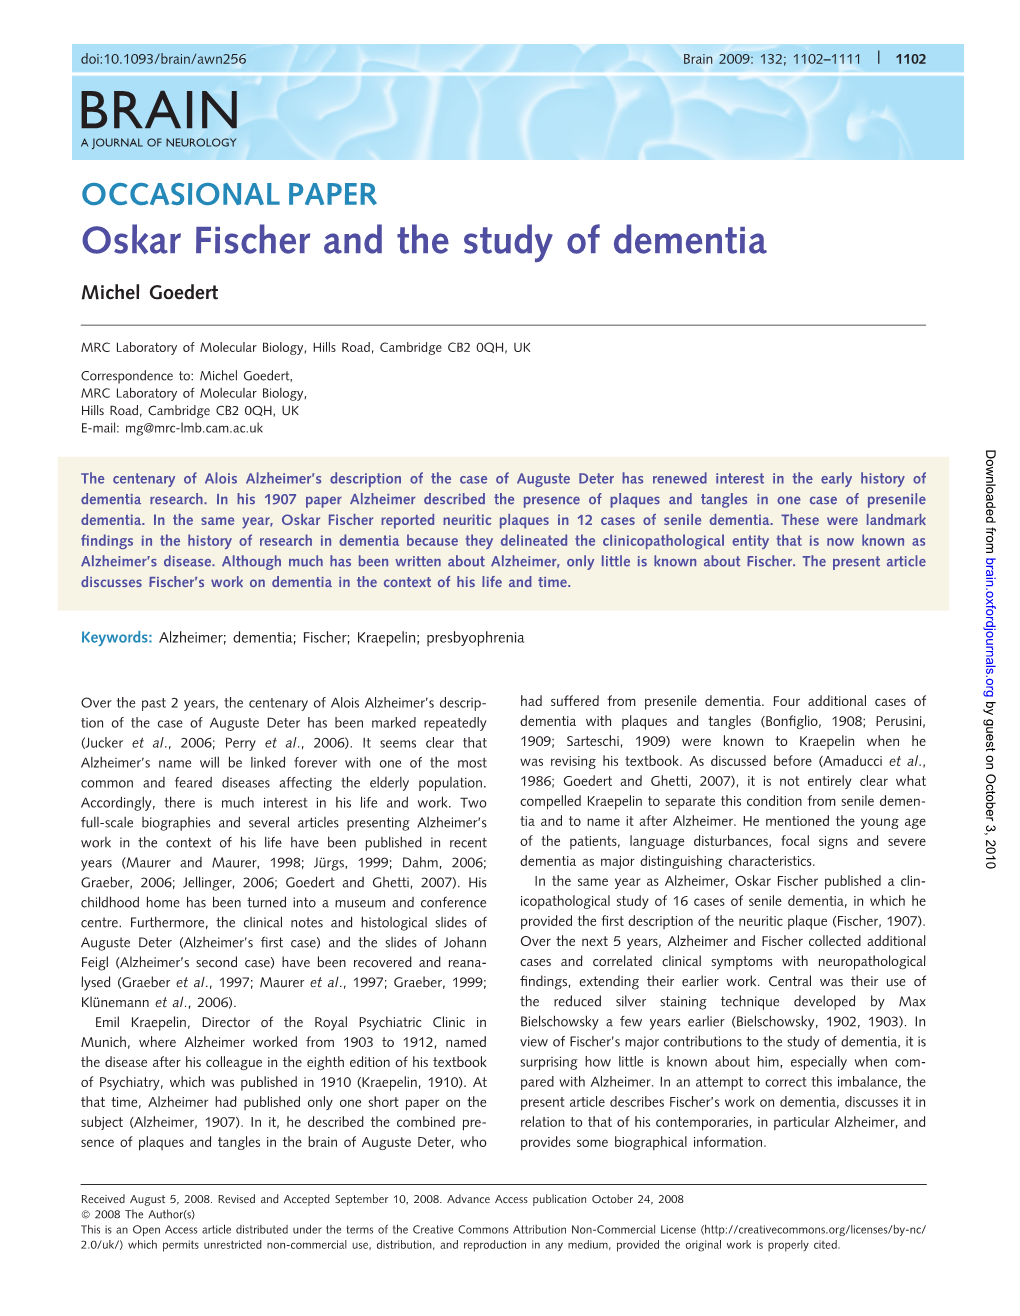 Oskar Fischer and the Study of Dementia